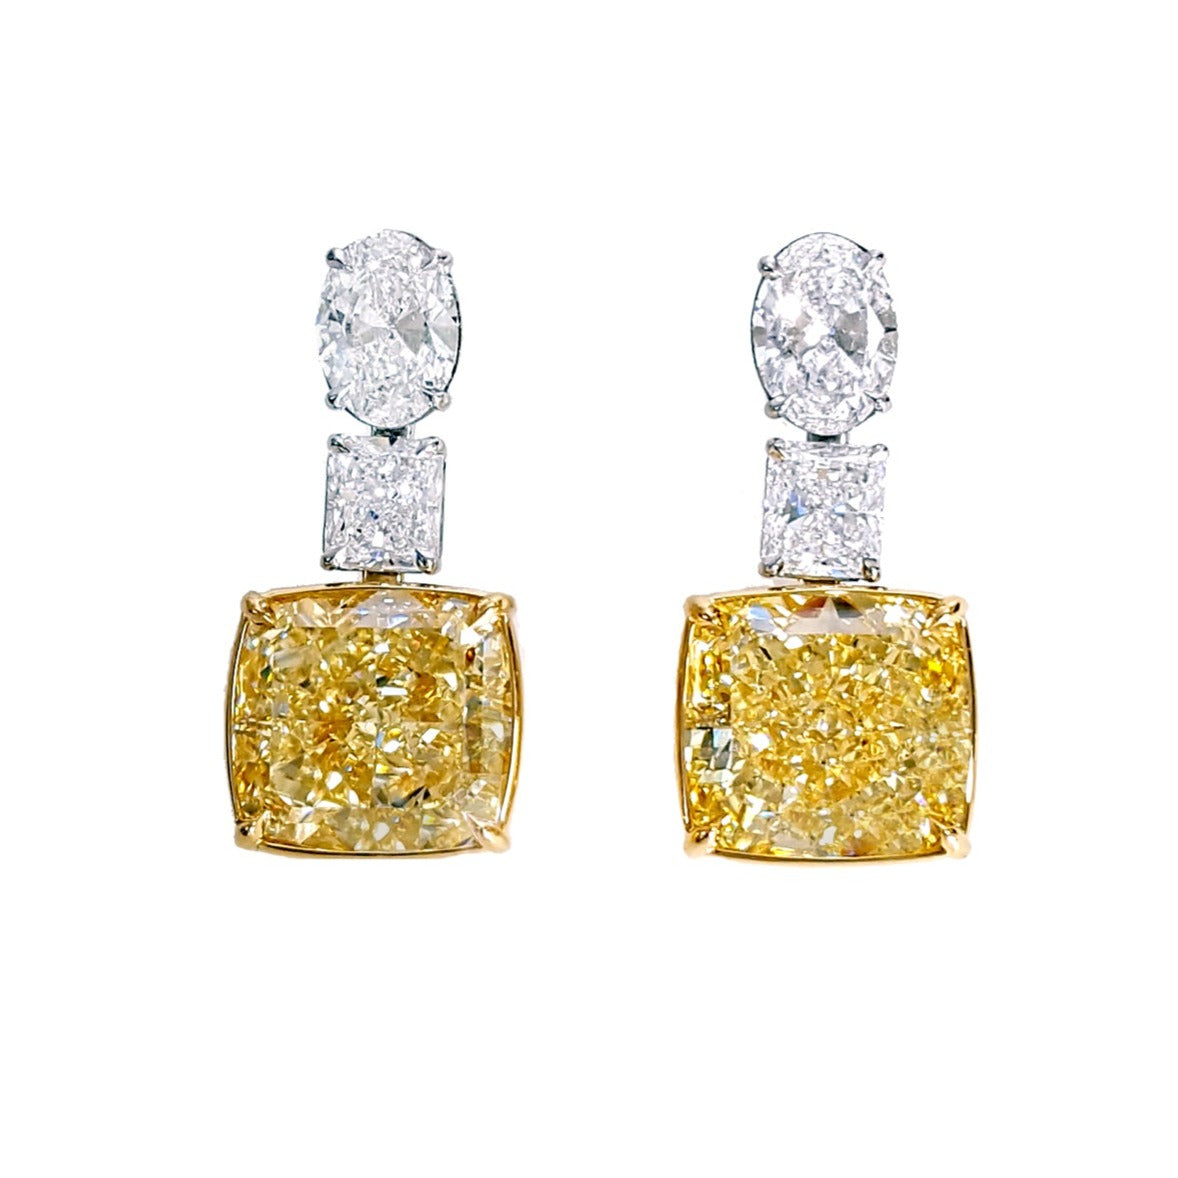 10.13carat Exquisite Diamond GIA Certified Canary Fancy Light Yellow Cushion-cut Drop Earrings